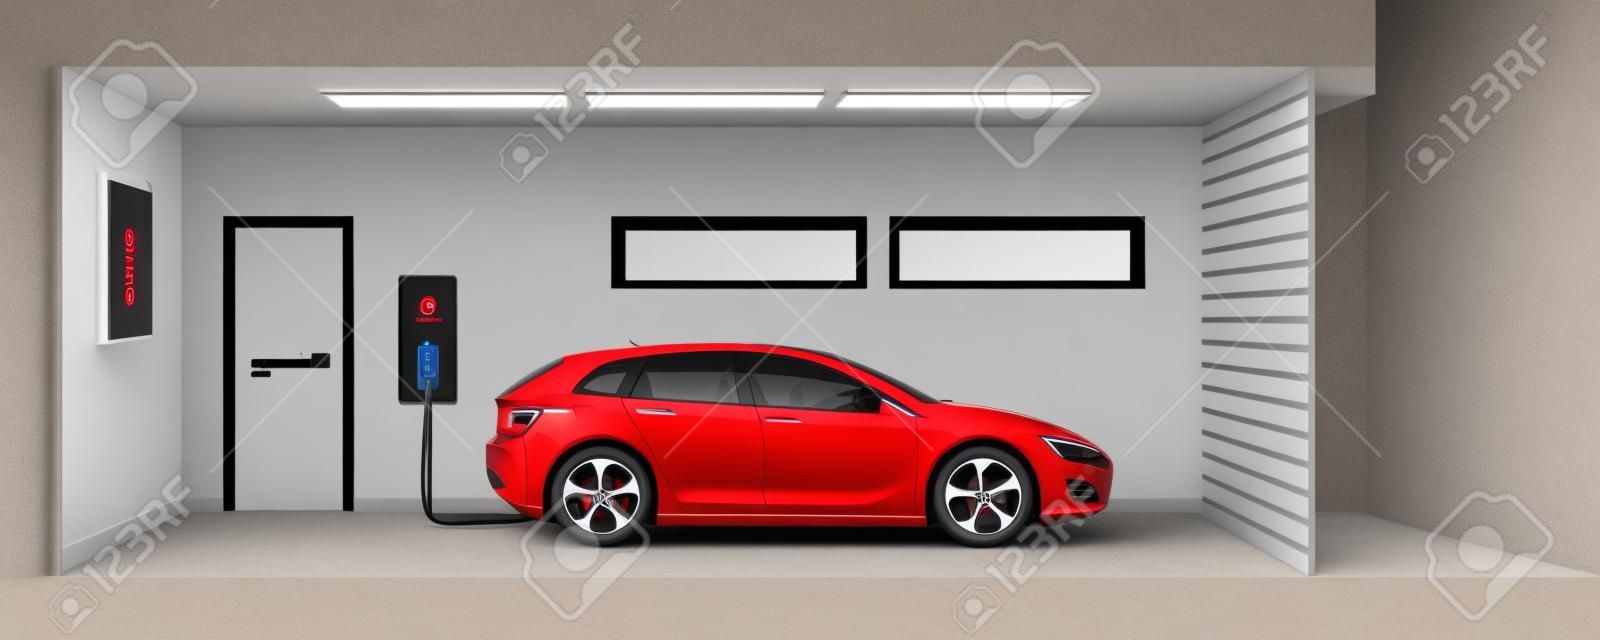 Ilustração plana de um carro elétrico vermelho que carrega no ponto da estação do carregador dentro da garagem da casa. Conceito e-motion doméstico inteligente integrado da eletromobilidade.